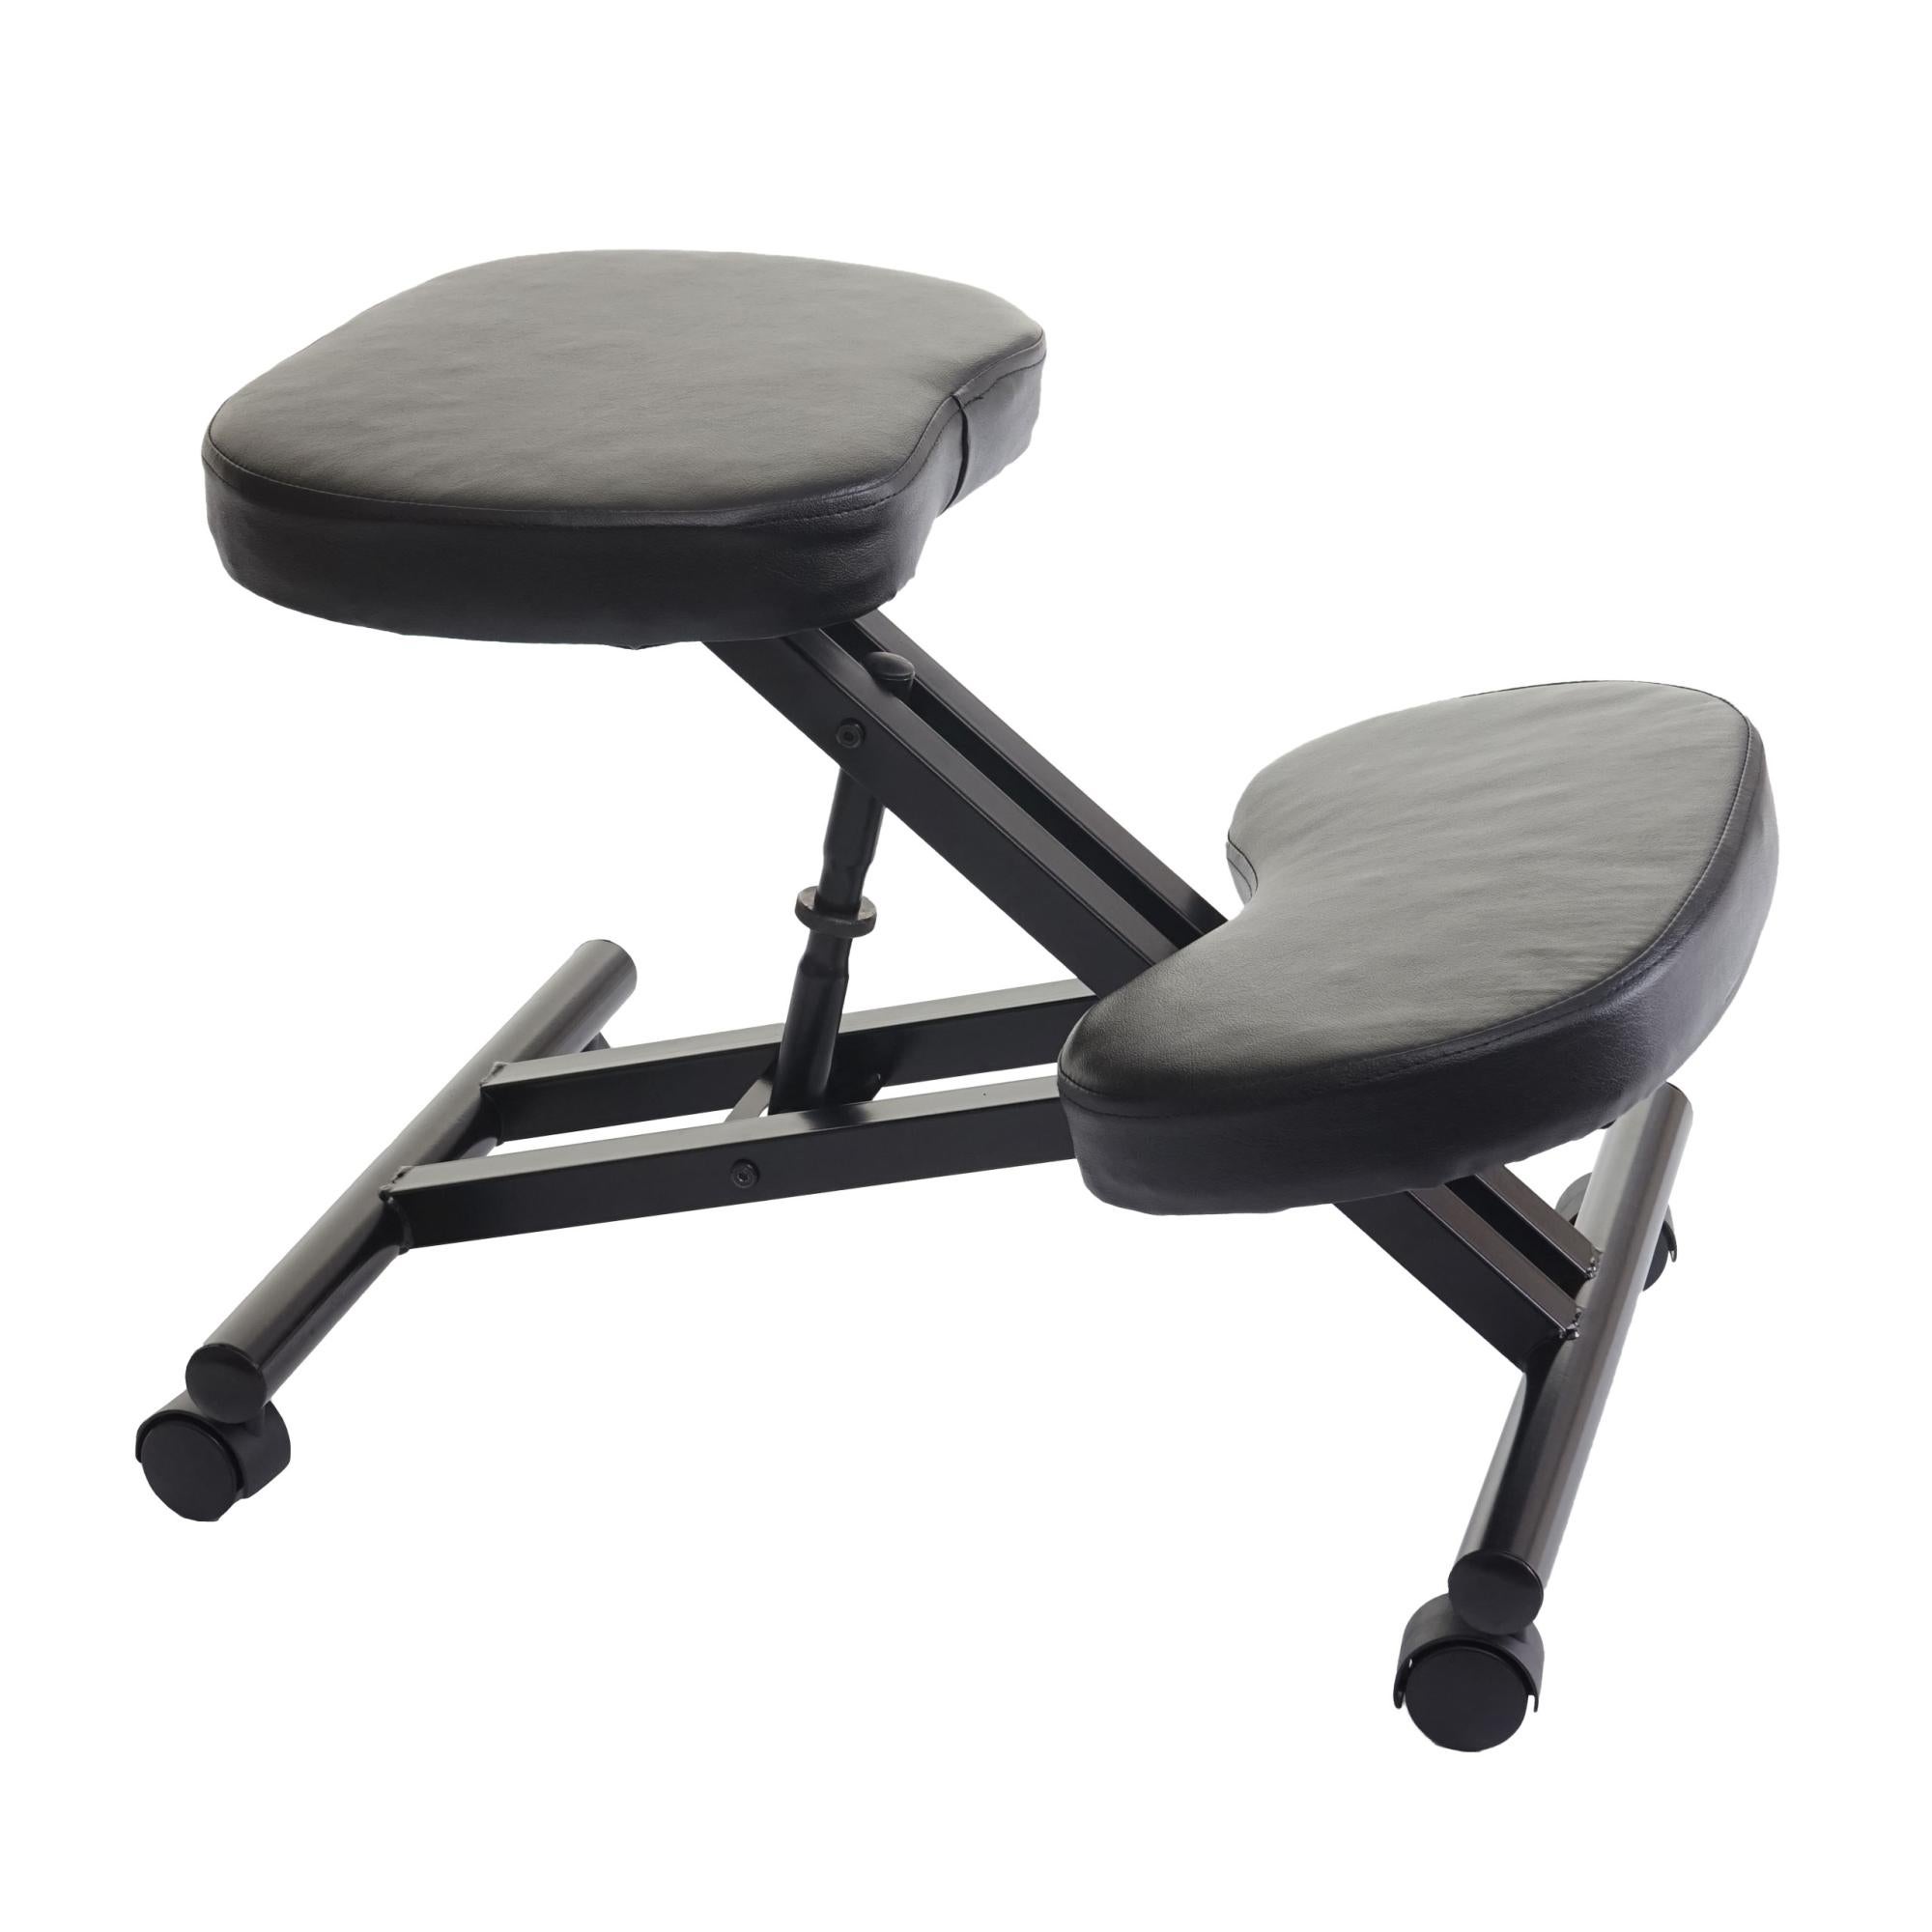 Tabouret chaise ergonomique siège assis genoux sur roulettes réglable  synthétique gris foncé BUR04099